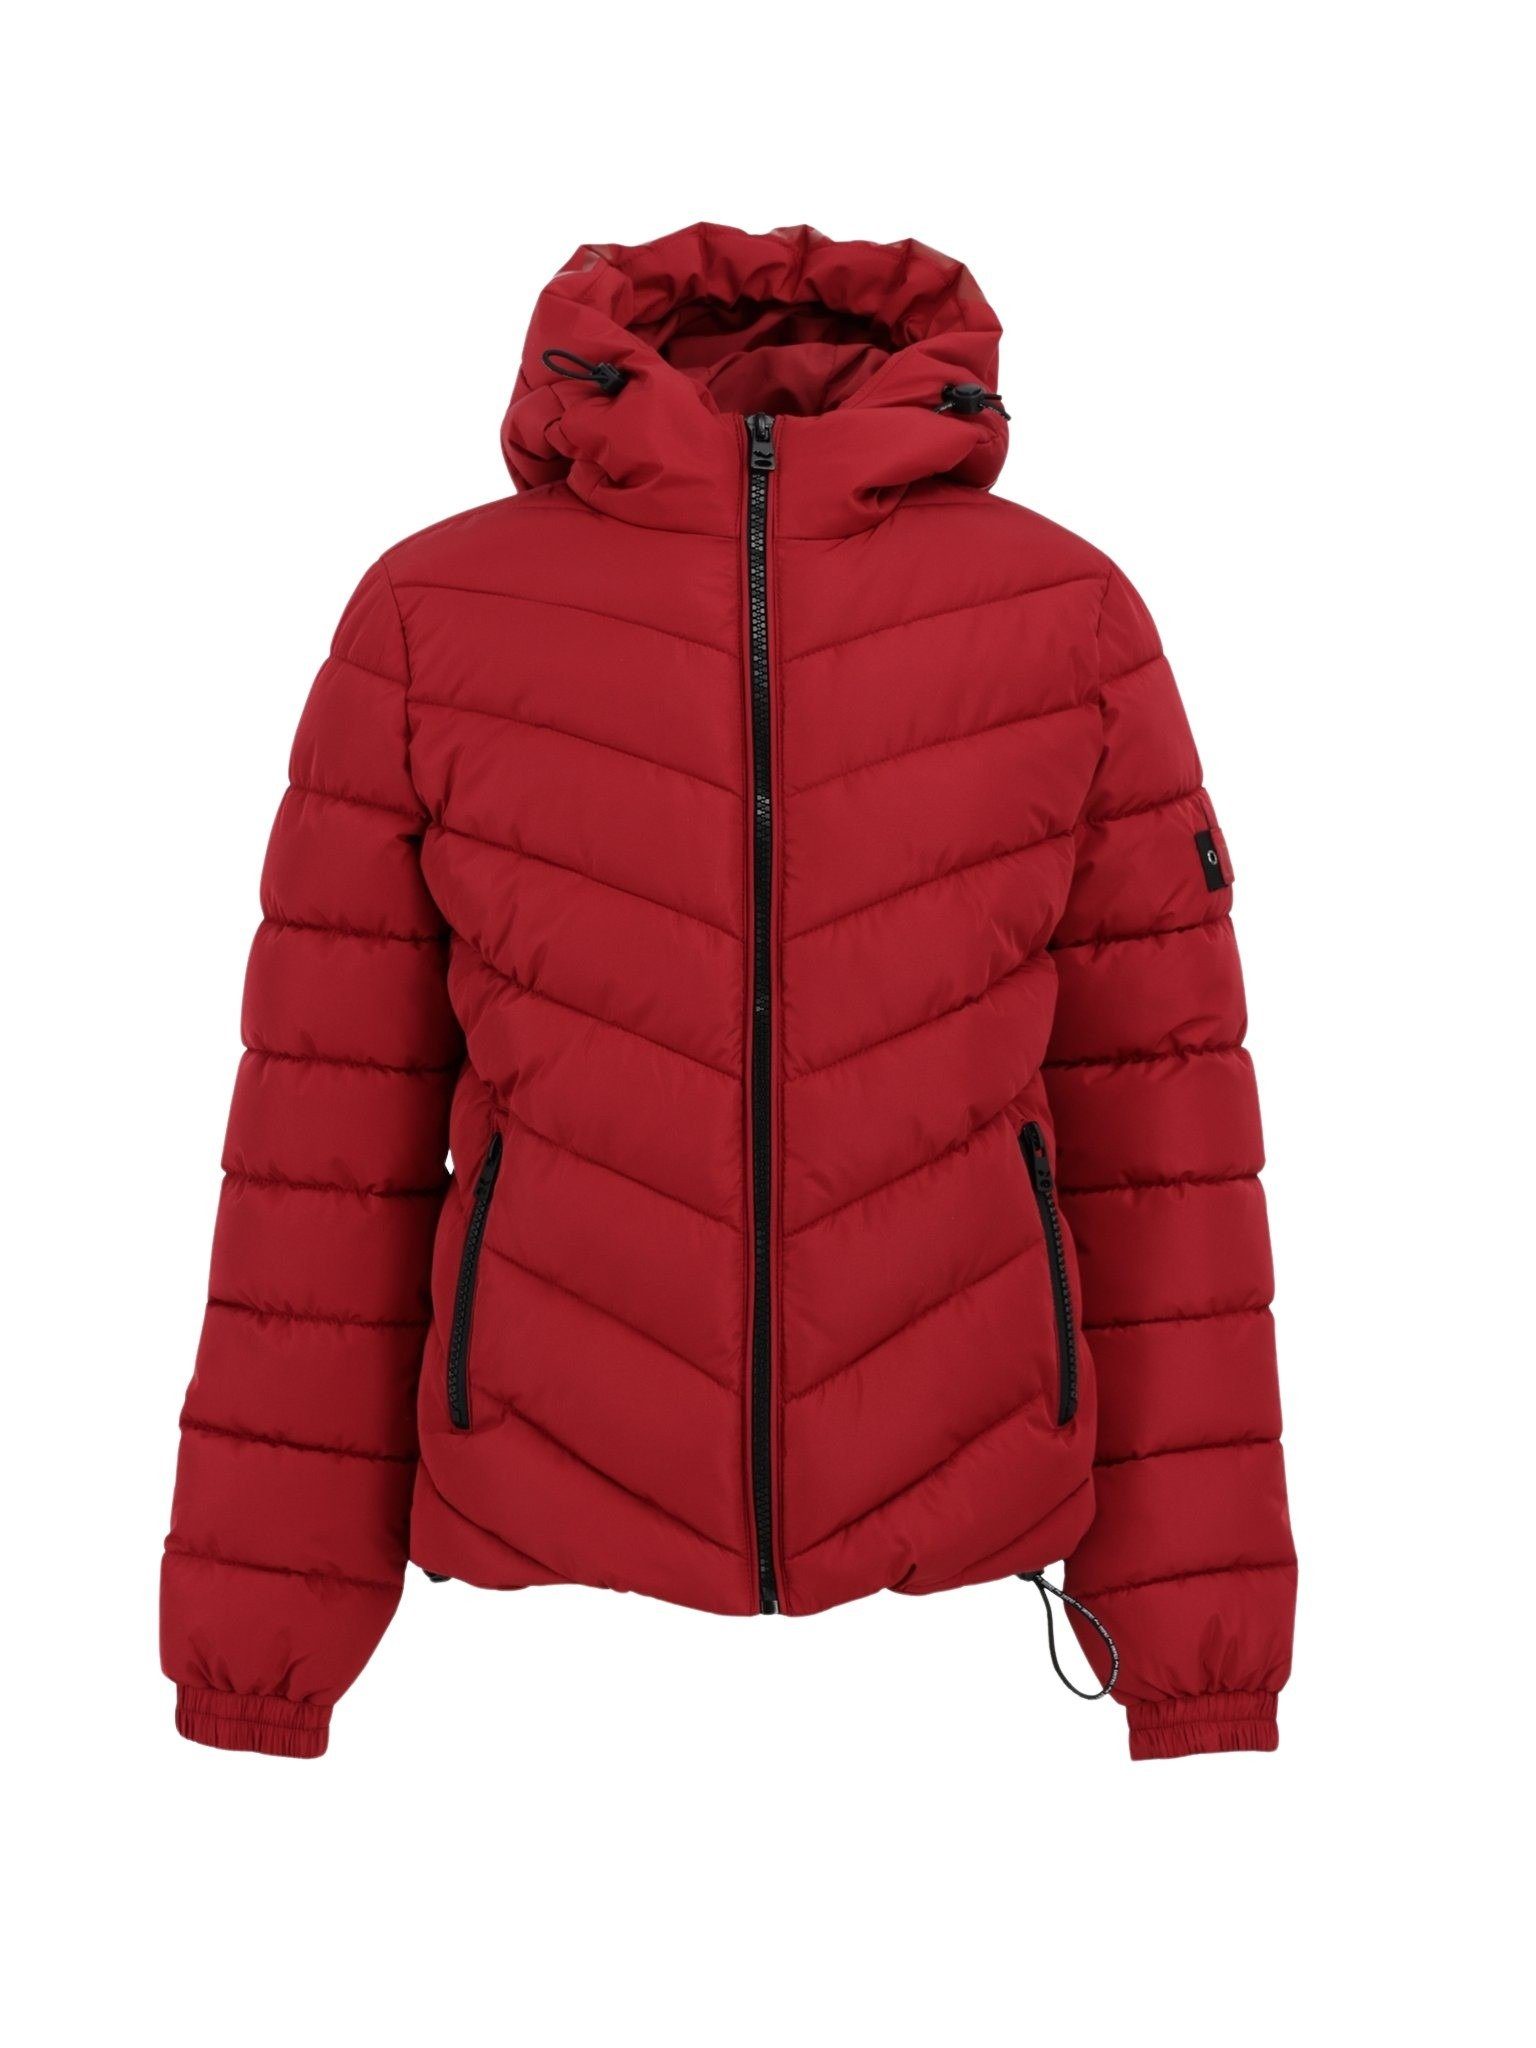 Kaufen Sie beliebte Artikel mit Rabatt! LTB Langjacke LTB Jackets Red Casele